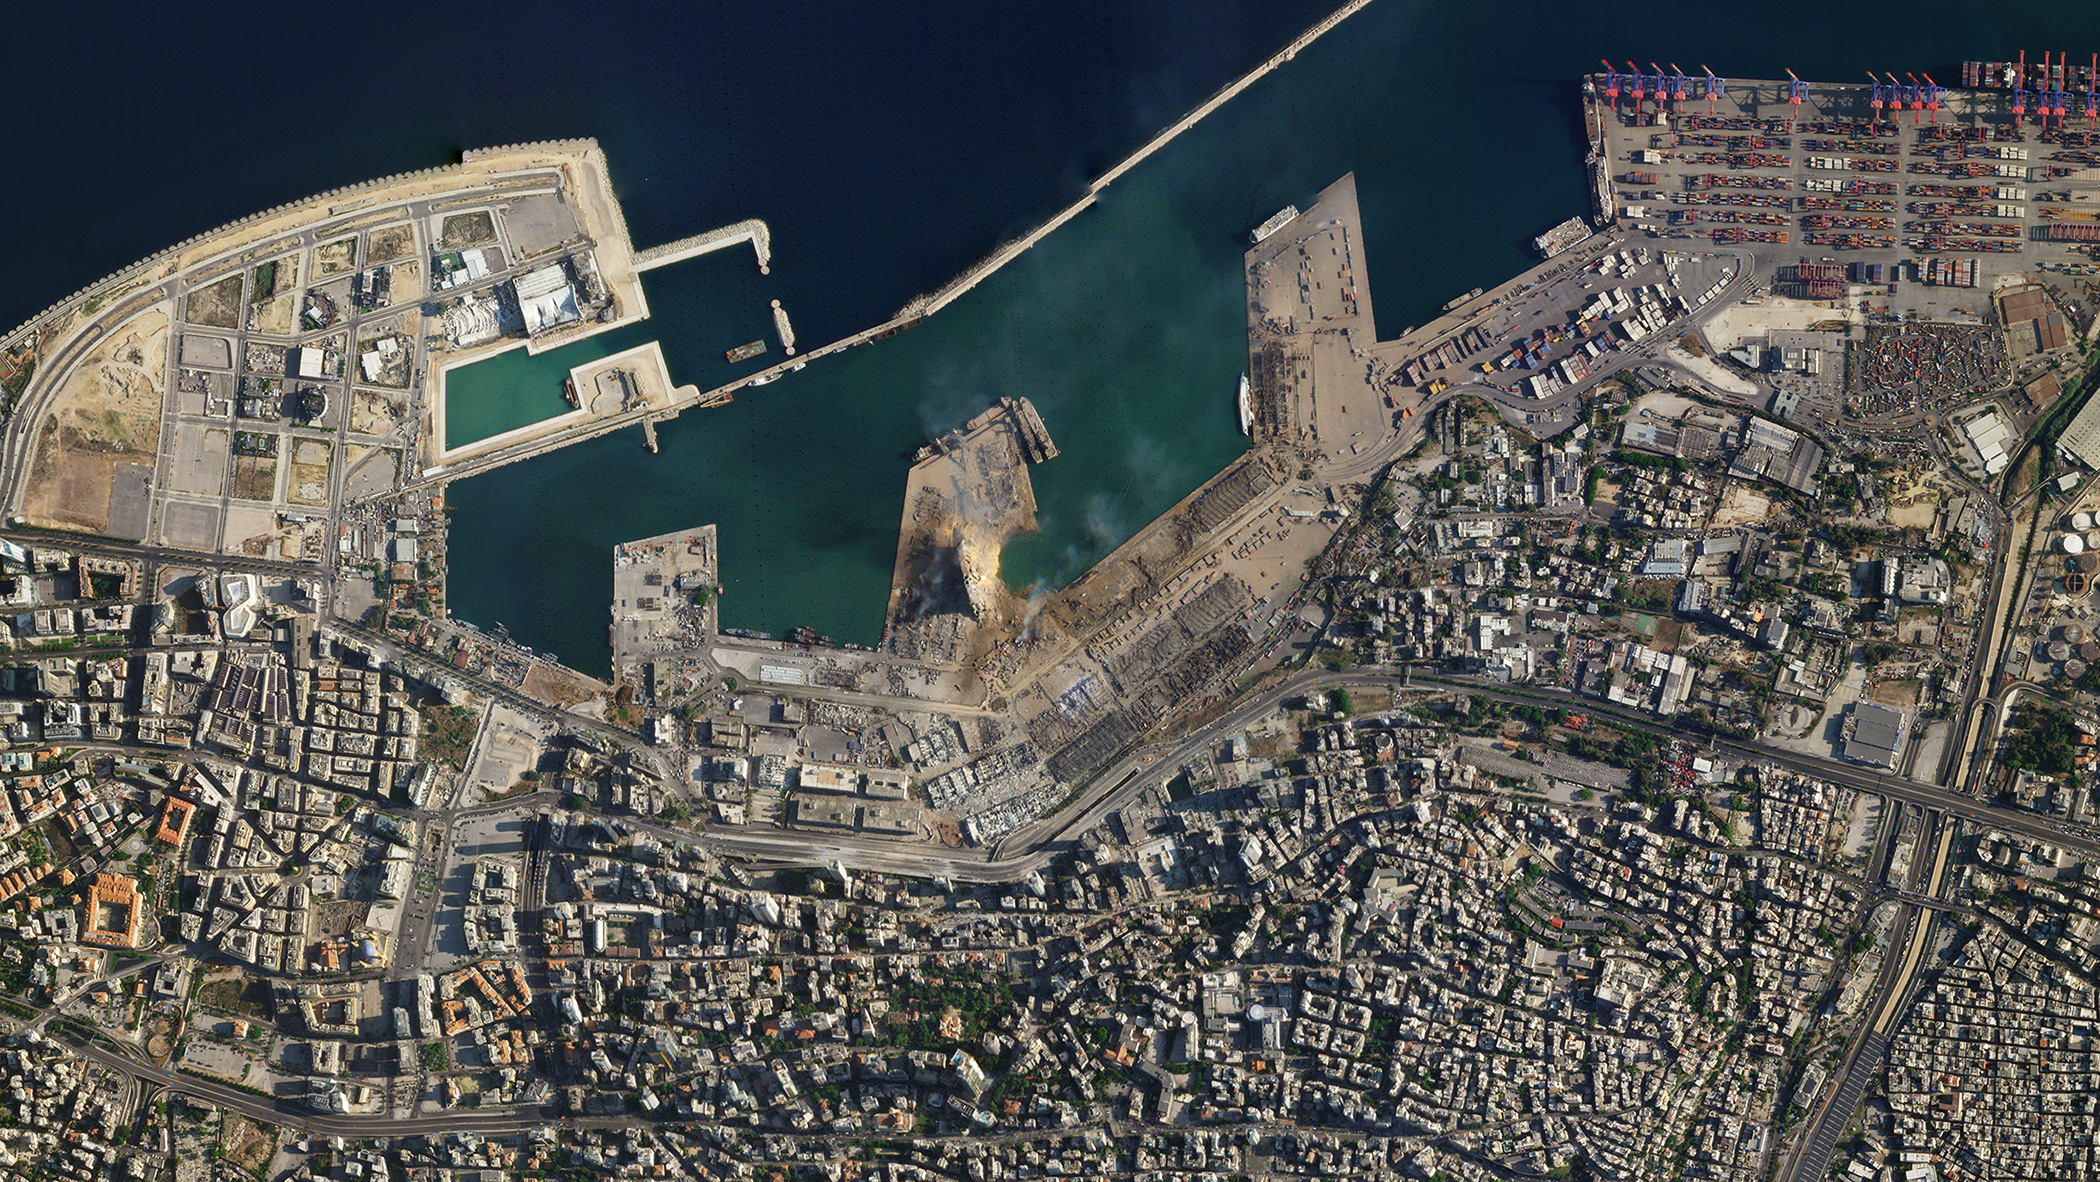 Le port de Beyrouth après l'explosion survenue le 4 août 2020. © 2020 Planet Labs, Inc